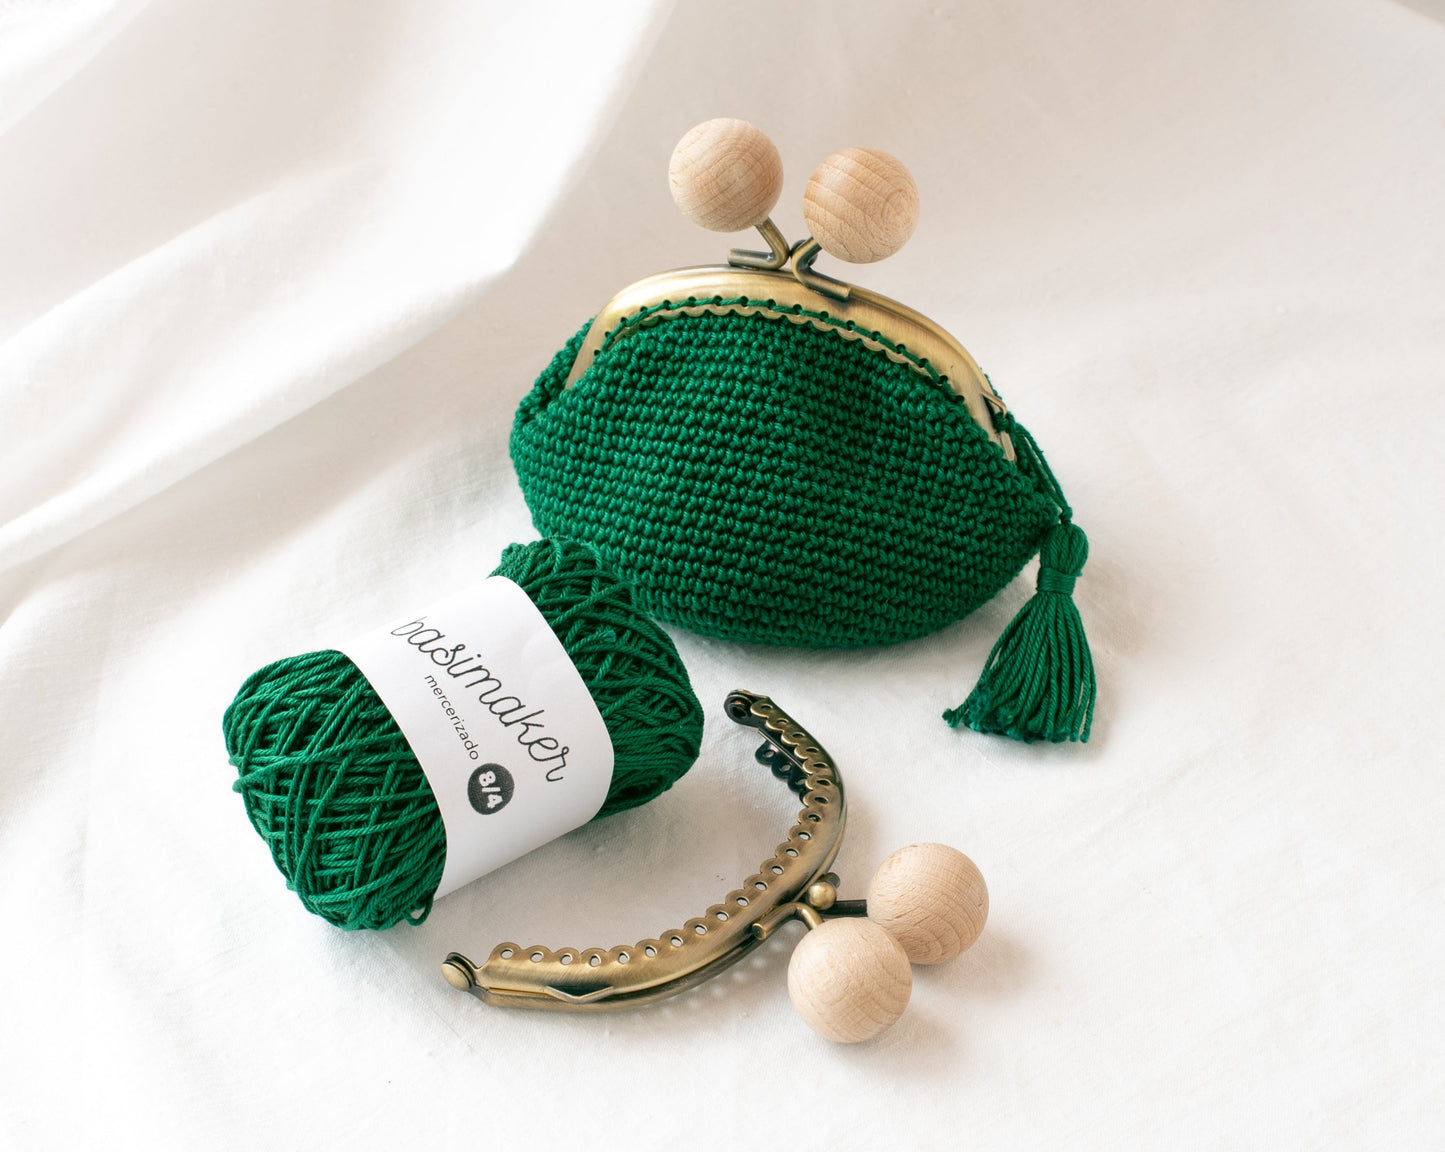 Monedero de crochet verde oscuro hecho a crochet, con ovillo verde y boquilla redonda metálica y bolas de madera